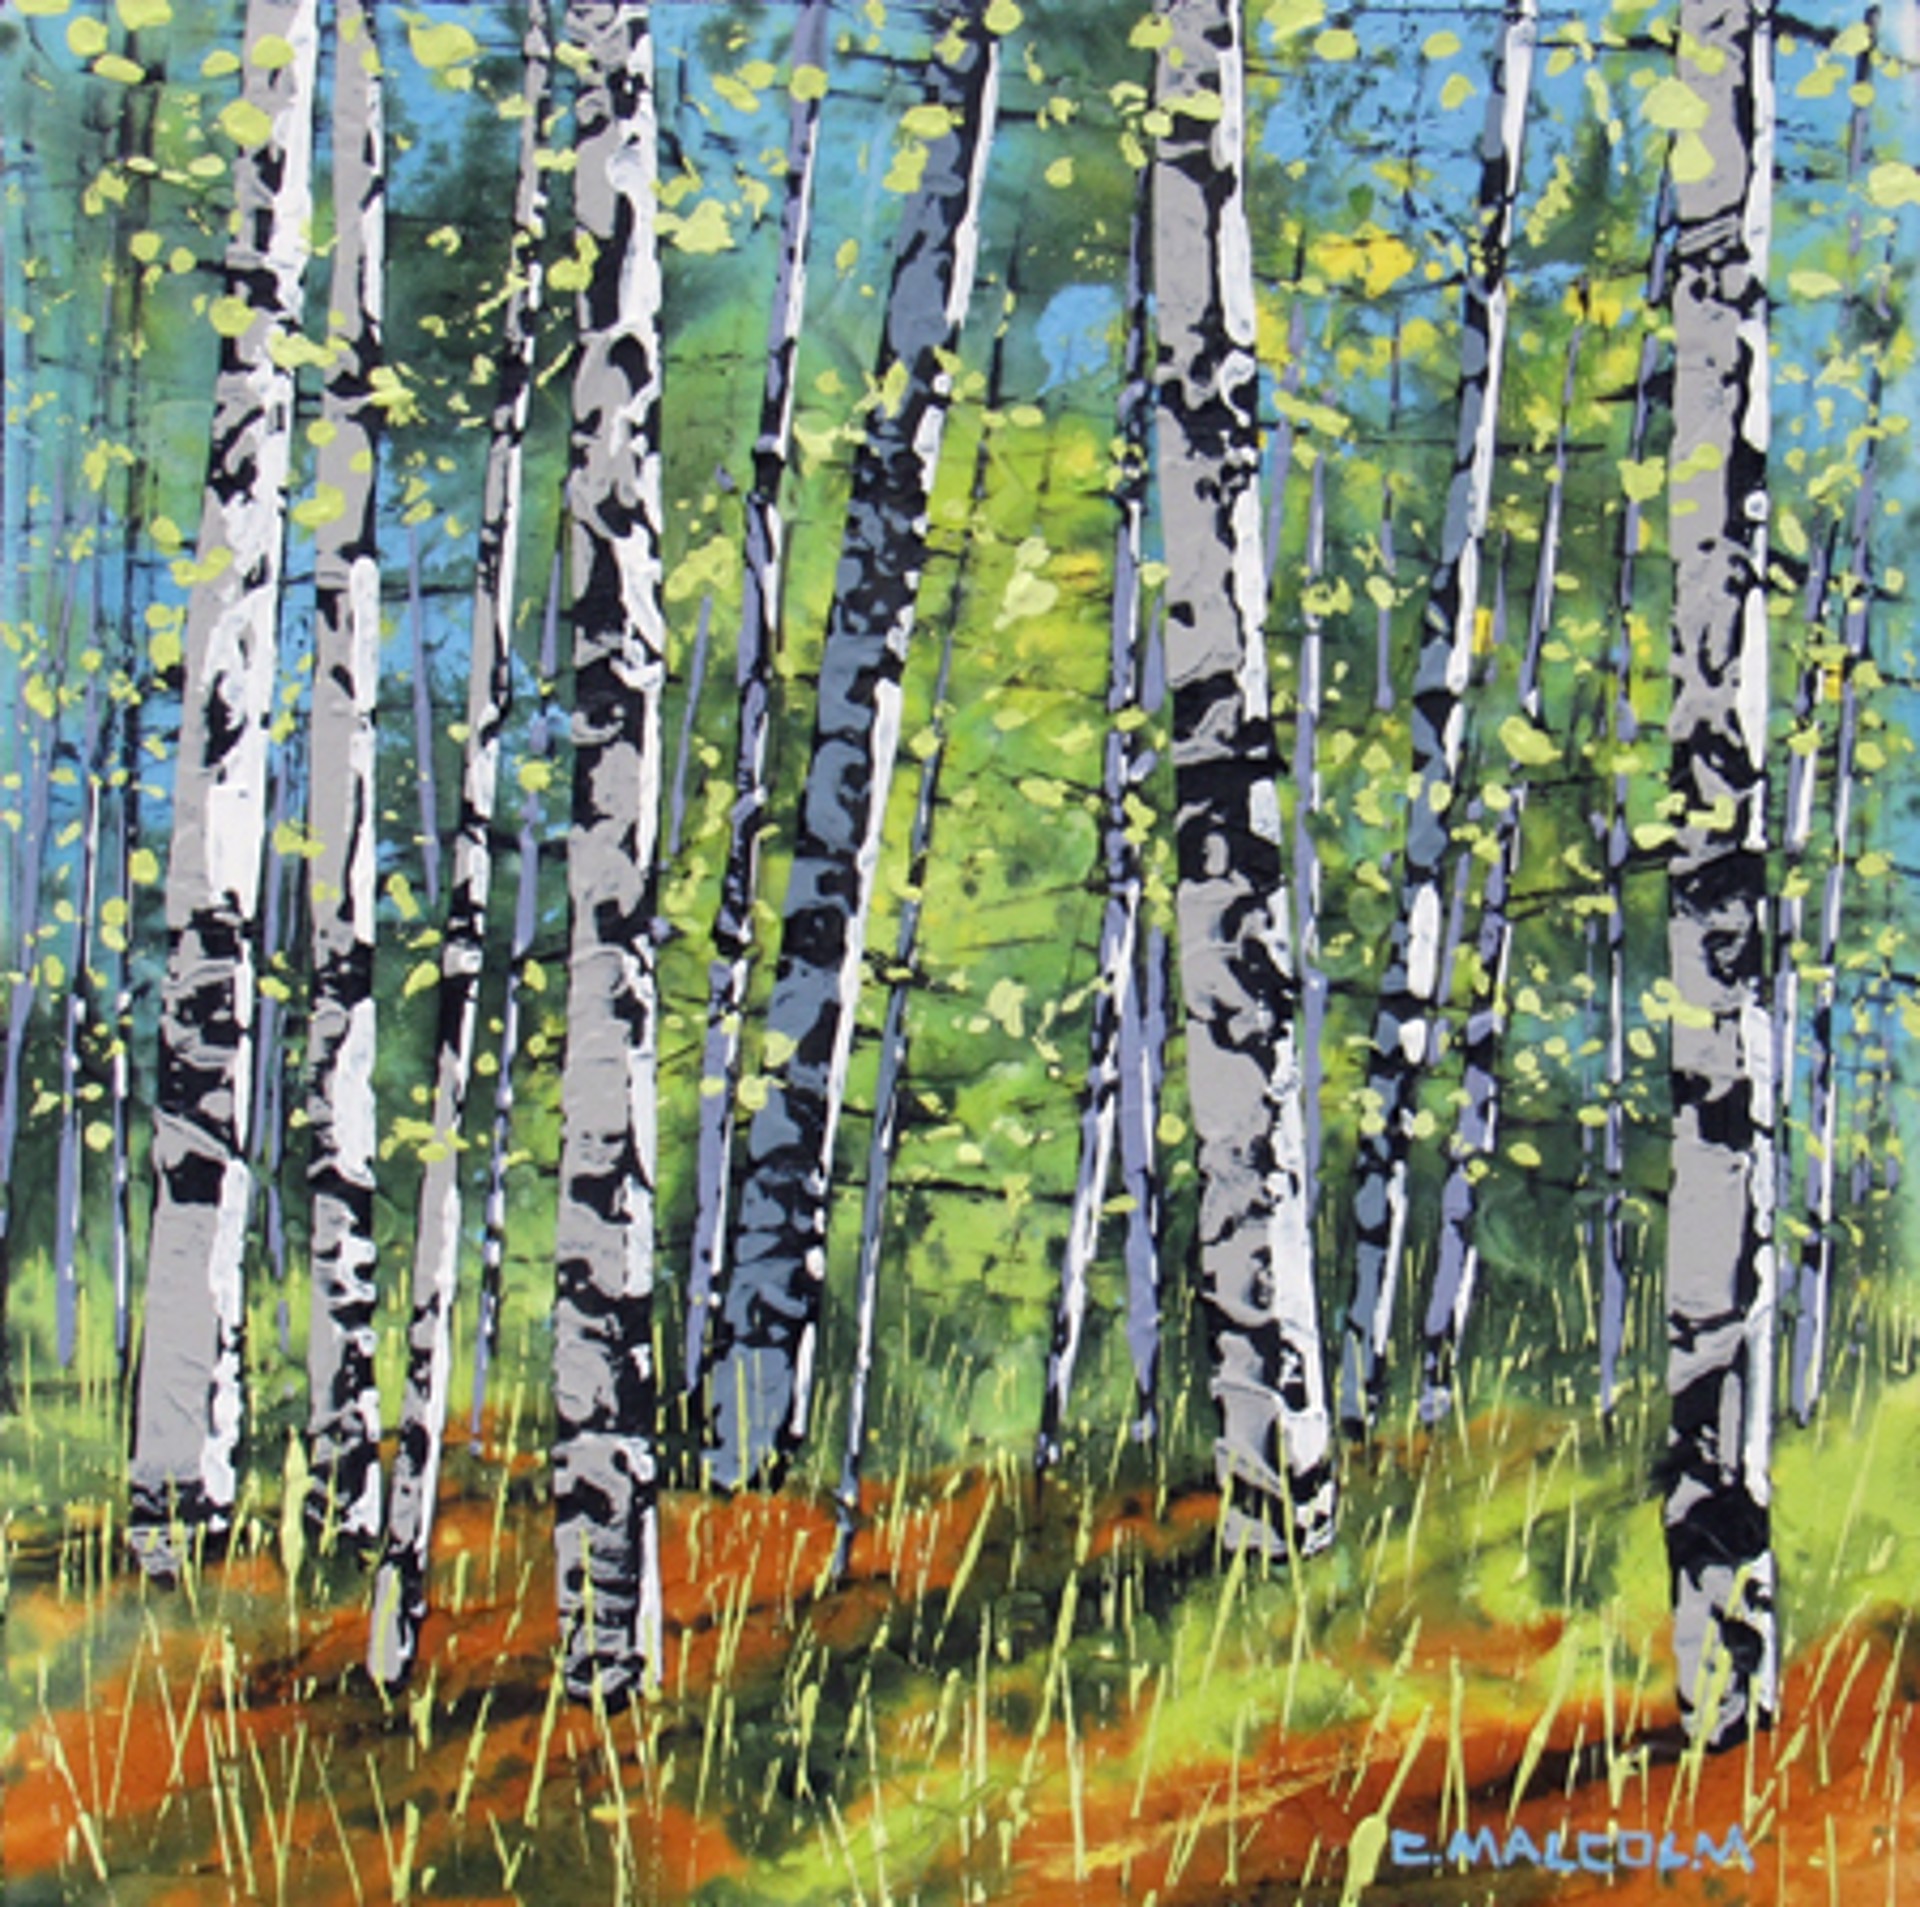 Treescape 05619 by Carole Malcolm